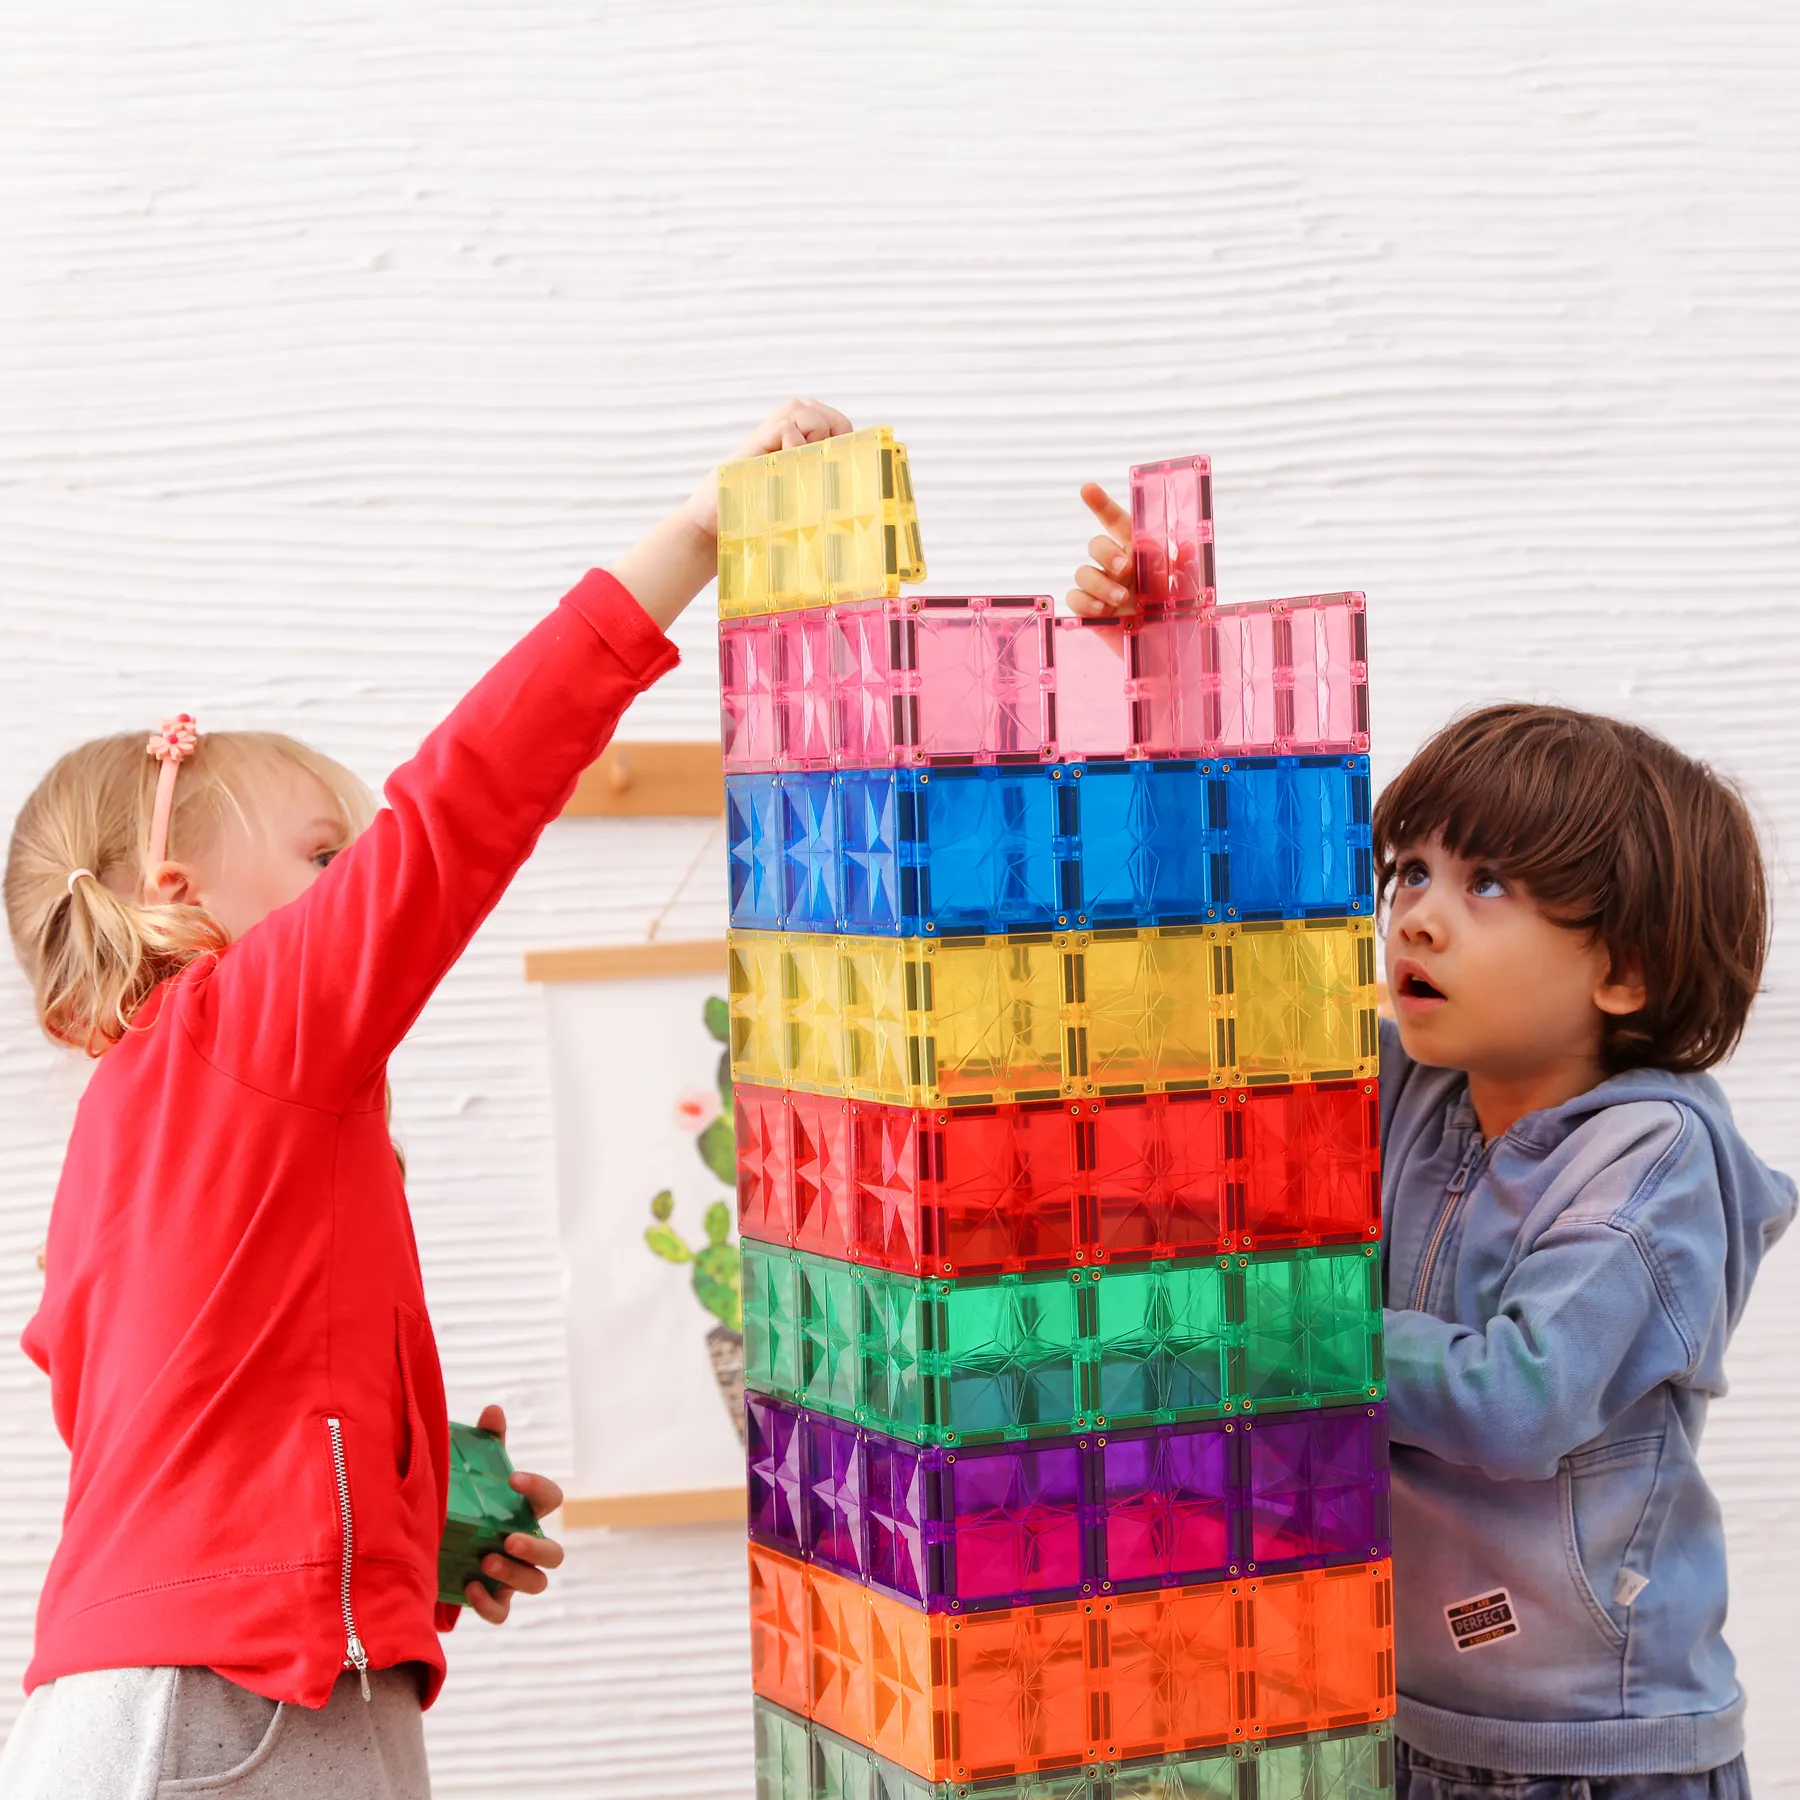 MNTL desain baru anak permainan belajar pendidikan mainan anak magnet ubin batang mainan untuk anak-anak pendidikan